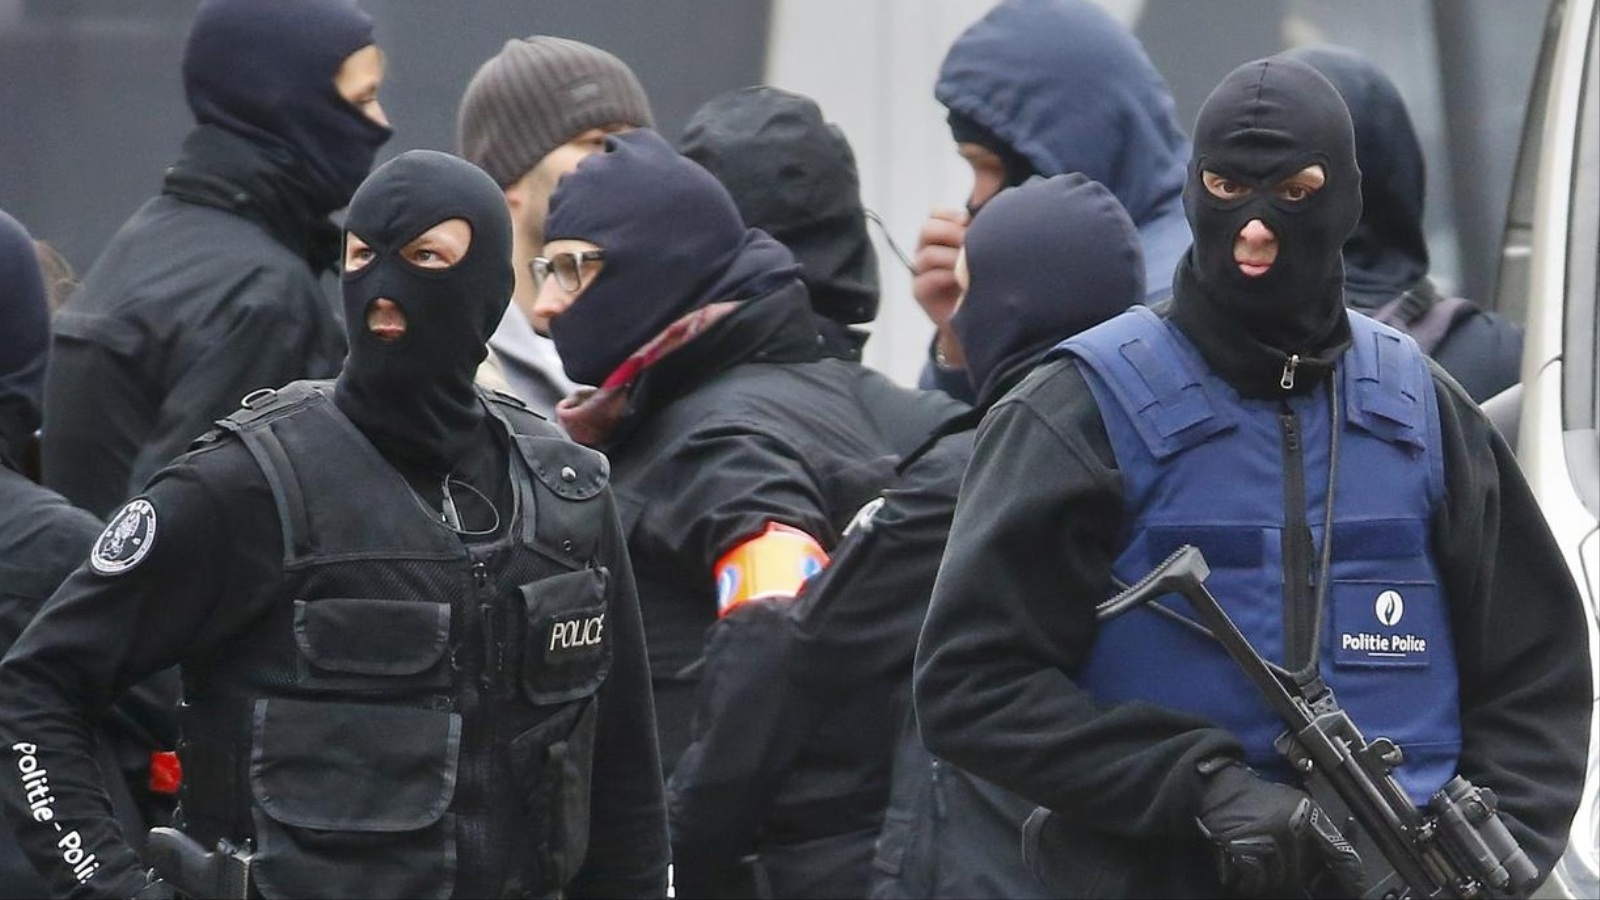 القوات الخاصة البلجيكية انتشرت بالشوارع تحسبا لهجمات على غرار ما حصل في باريس الجمعة الماضية (أسوشيتد برس)